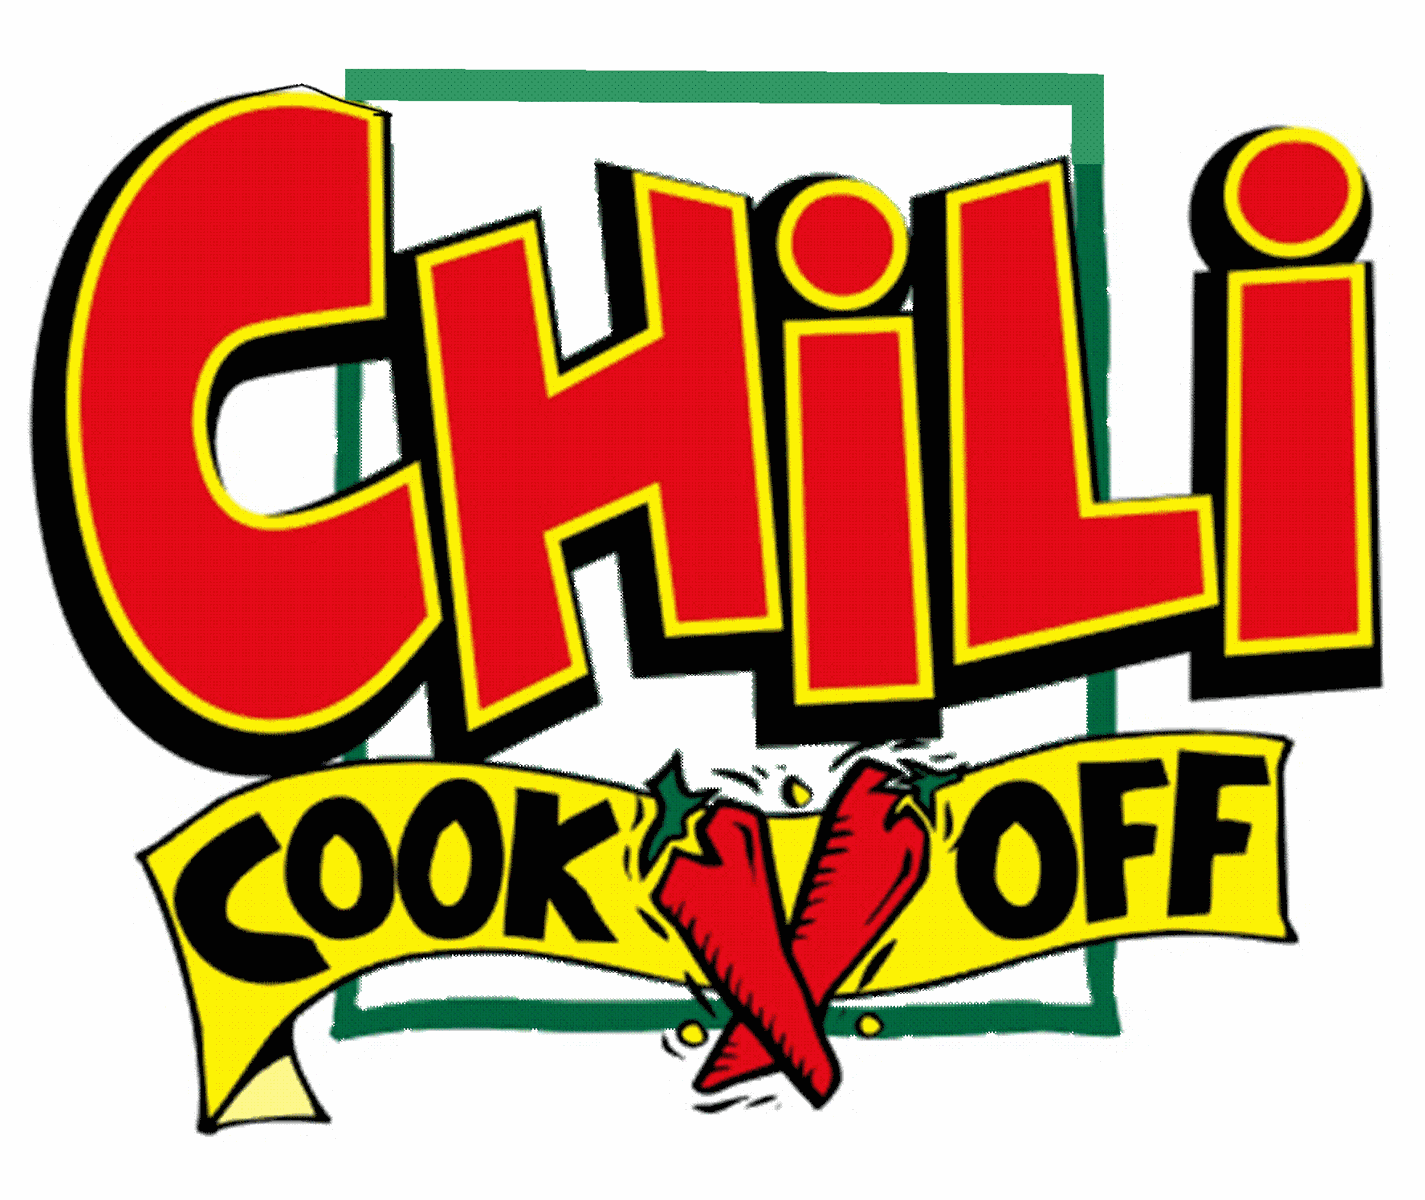 ... Chili Cookoff Clip Art -  - Chili Cook Off Clip Art